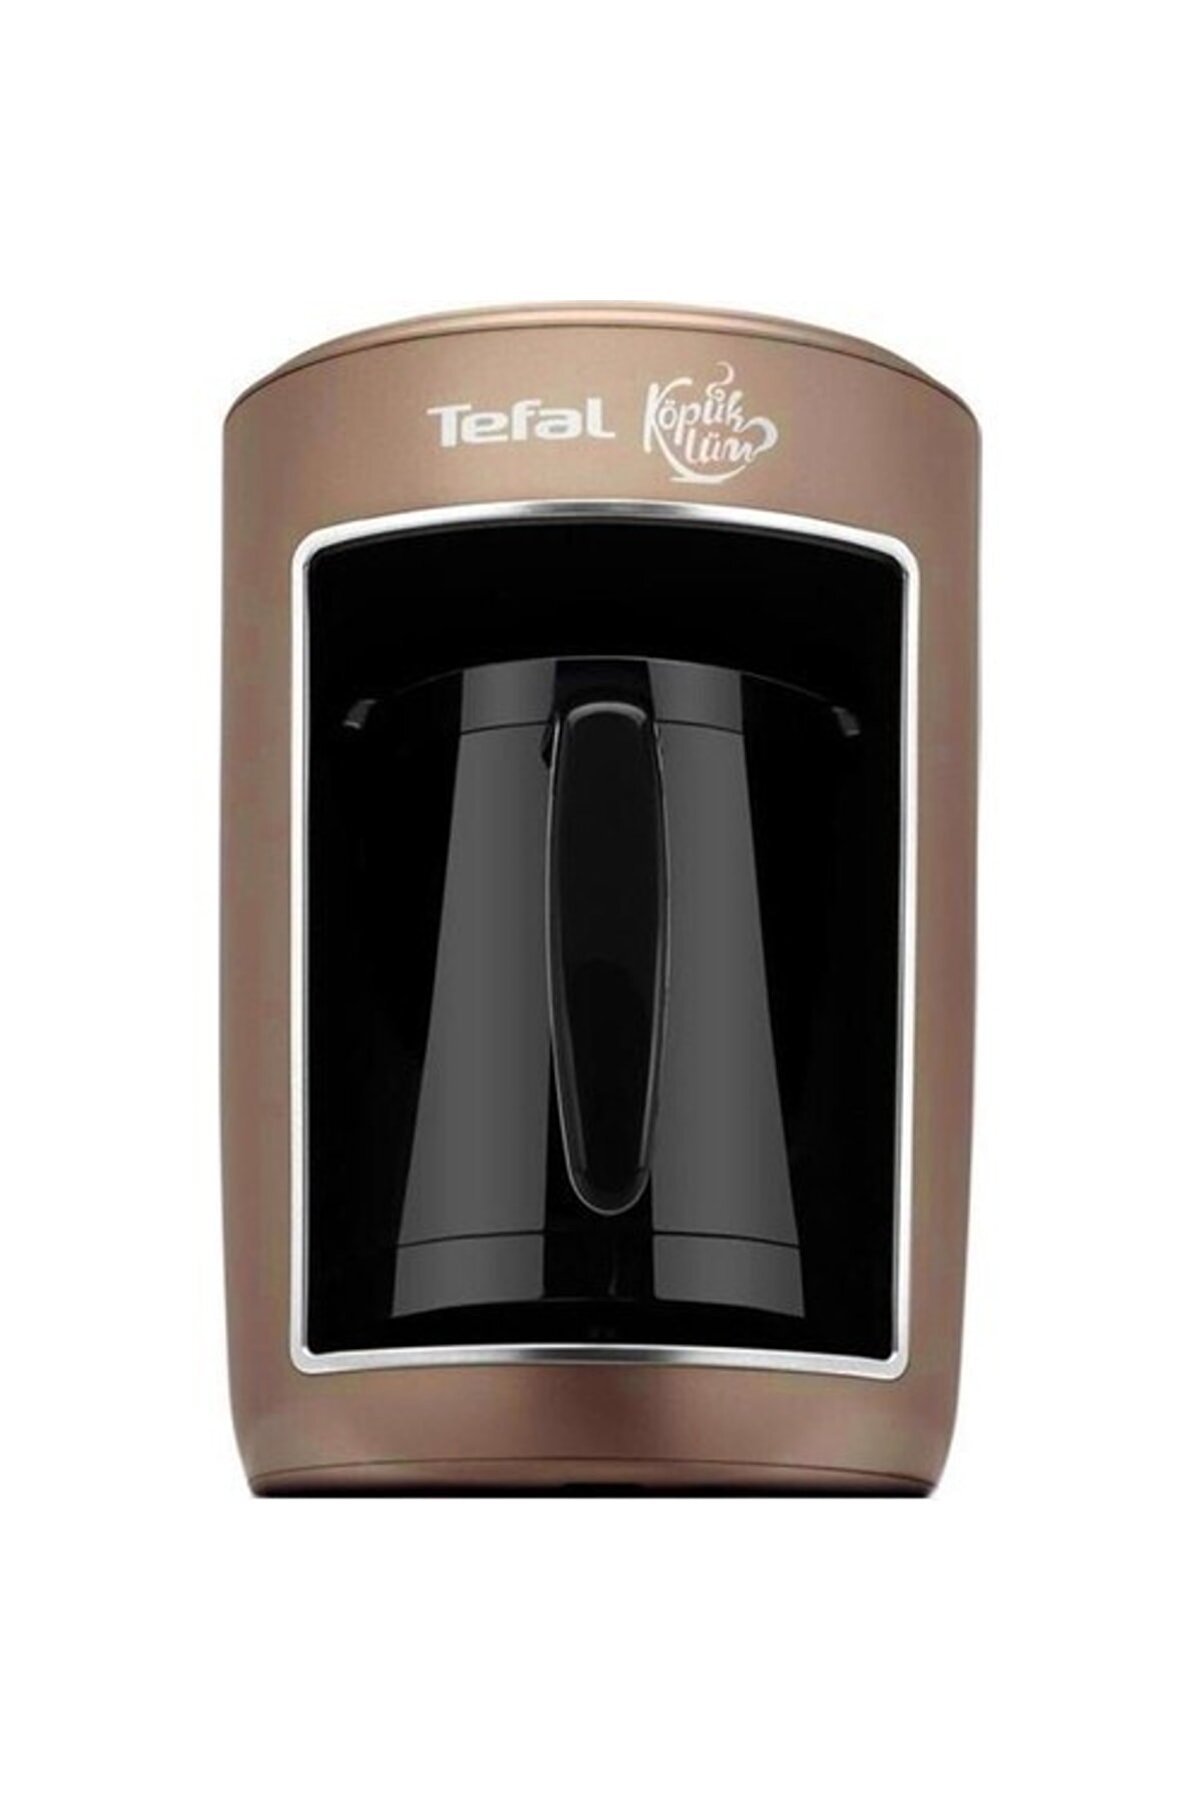 TEFAL Köpüklüm Türk Kahvesi Makinesi 9100047157